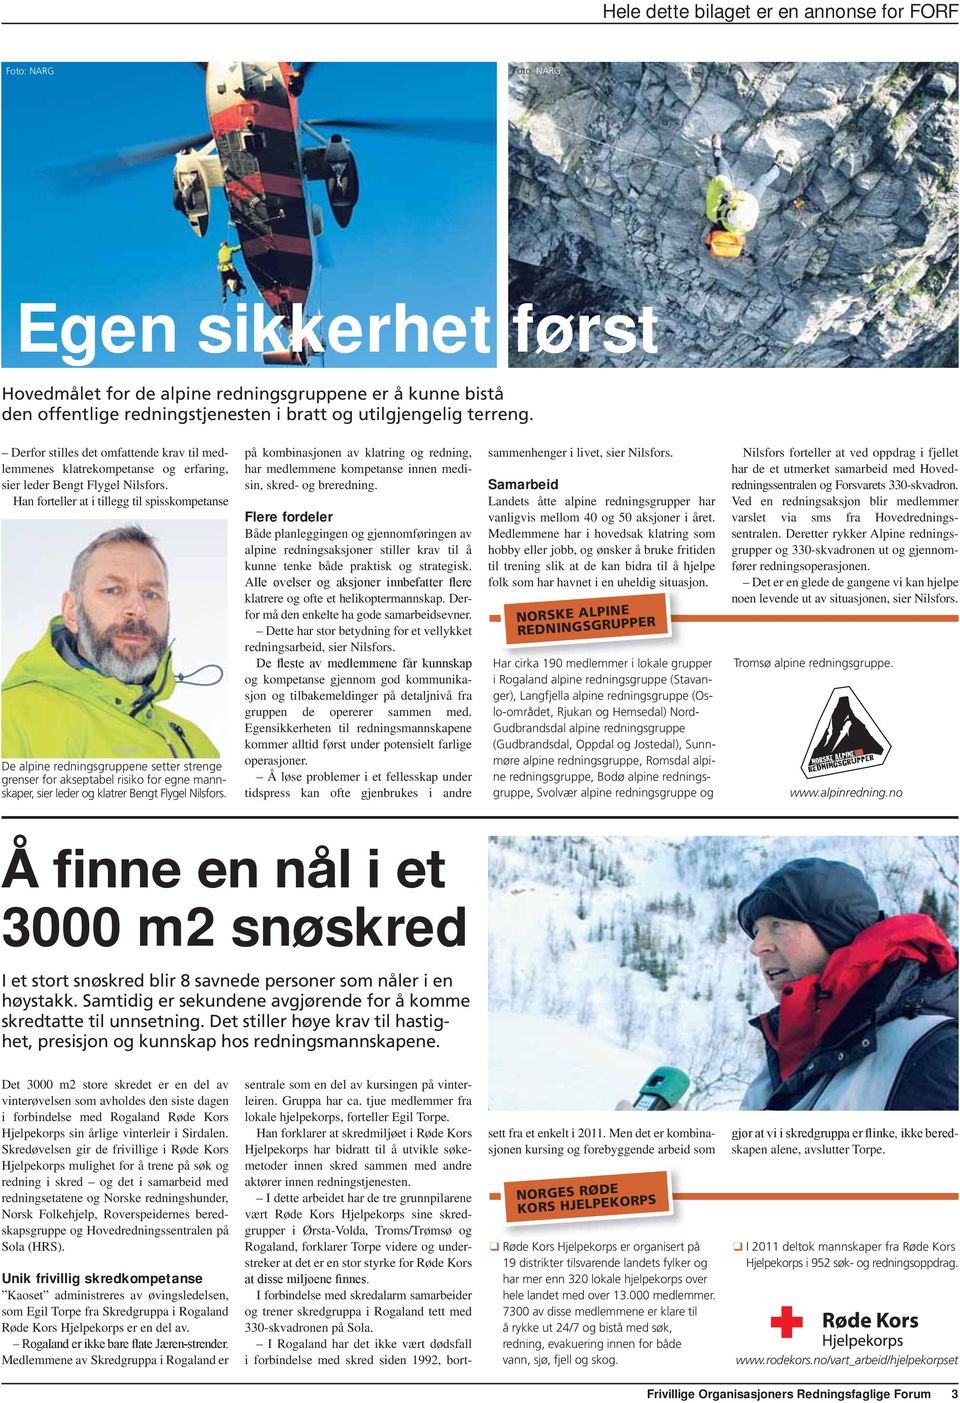 Han forteller at i tillegg til spisskompetanse De alpine redningsgruppene setter strenge grenser for akseptabel risiko for egne mannskaper, sier leder og klatrer Bengt Flygel Nilsfors.